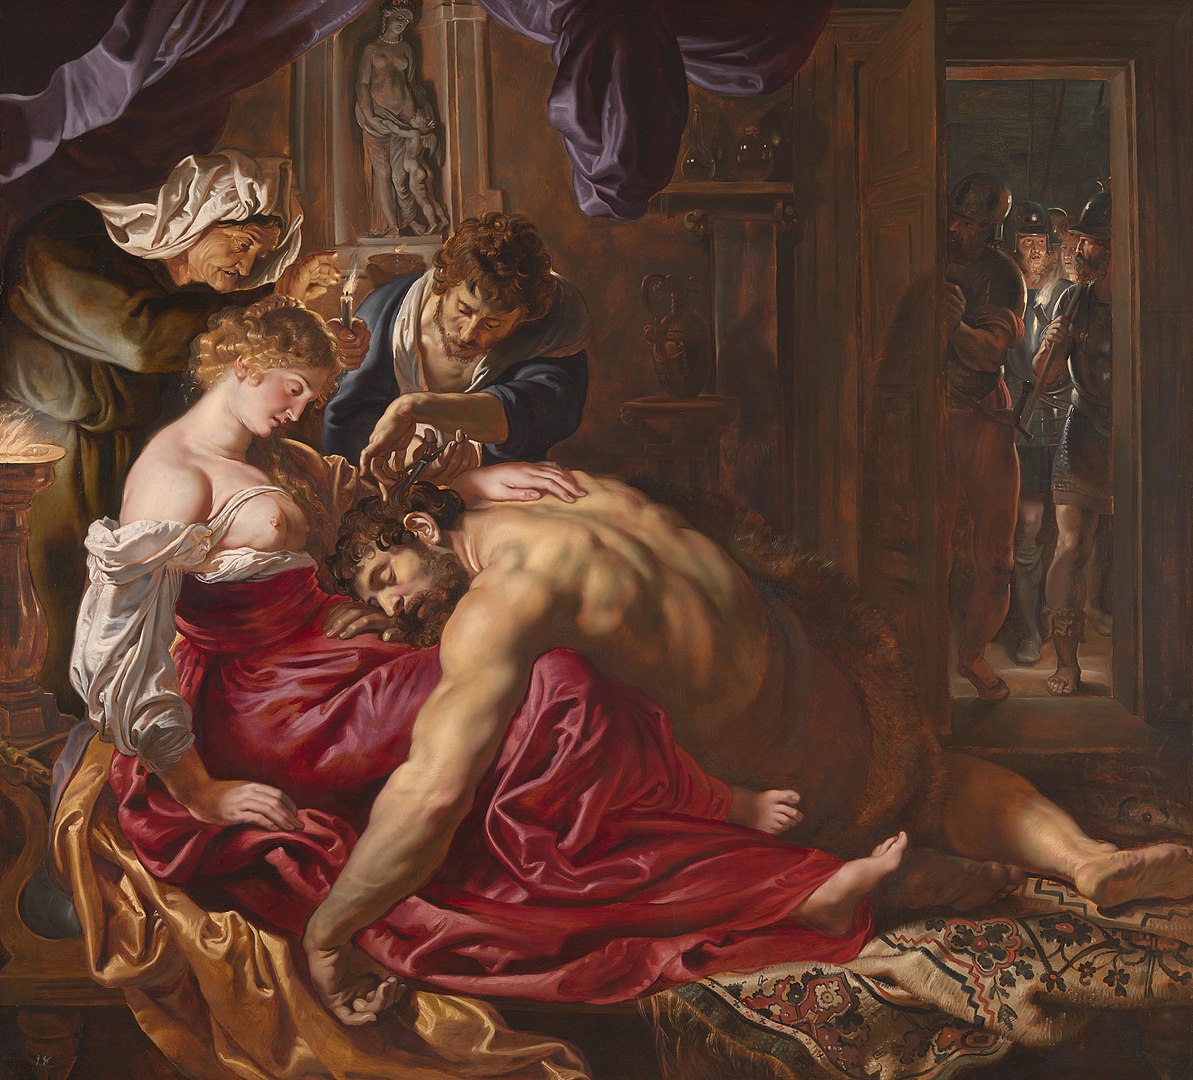 Samson and Delilah, Peter Paul Rubens, c. 1609-1610